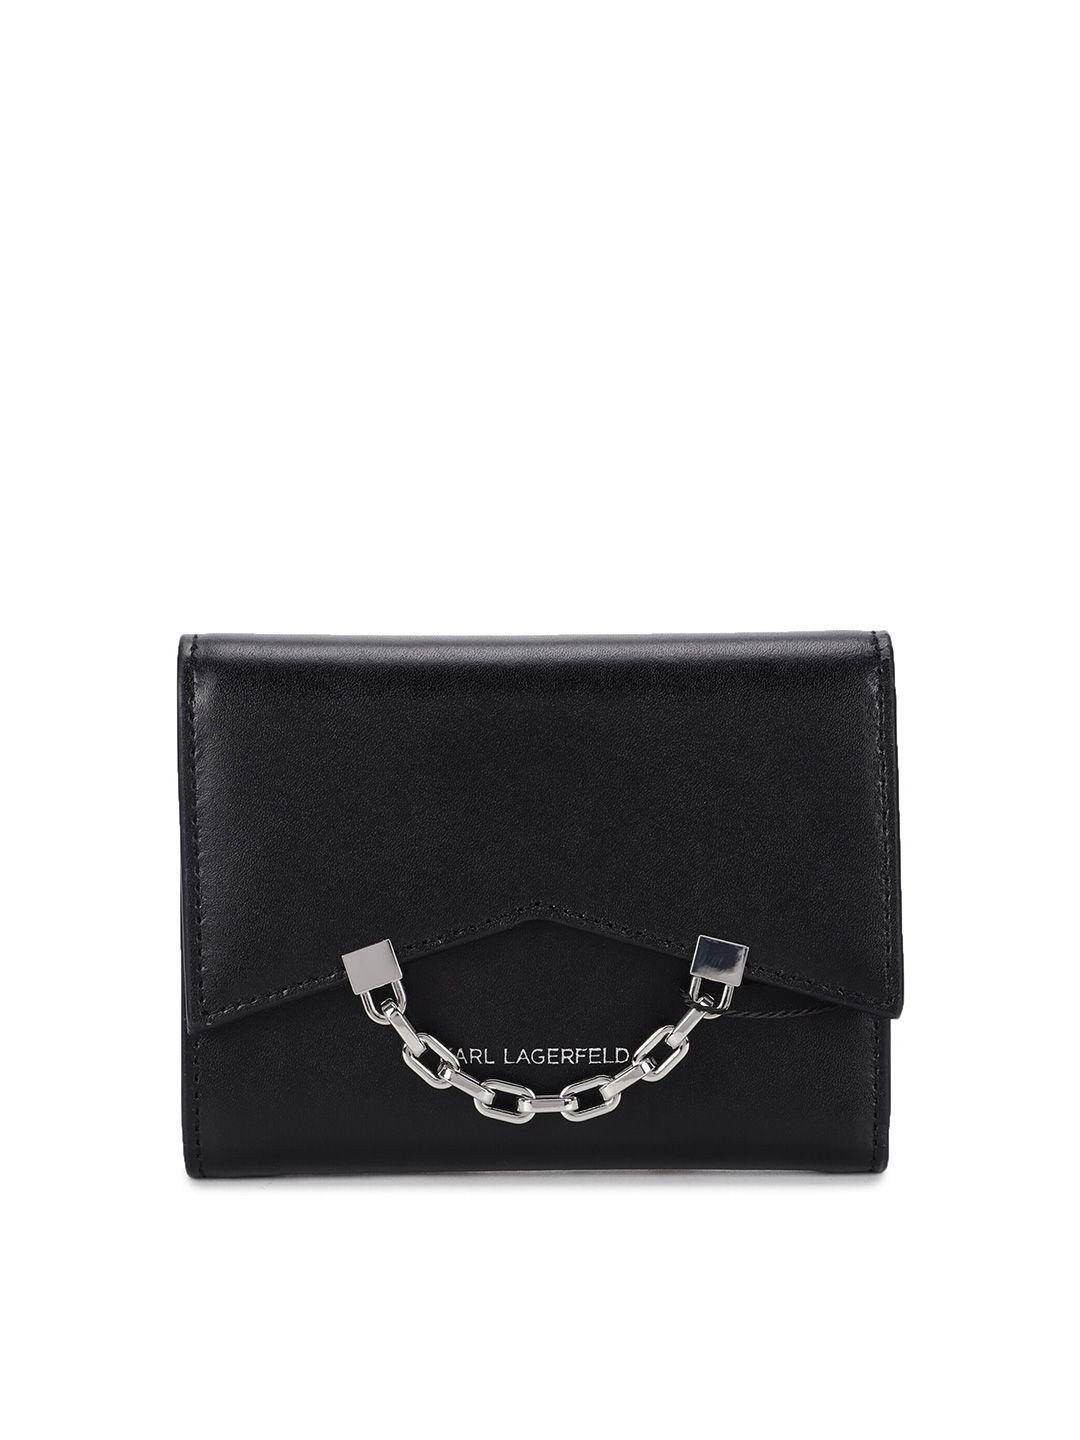 karl lagerfeld women leather three fold wallet